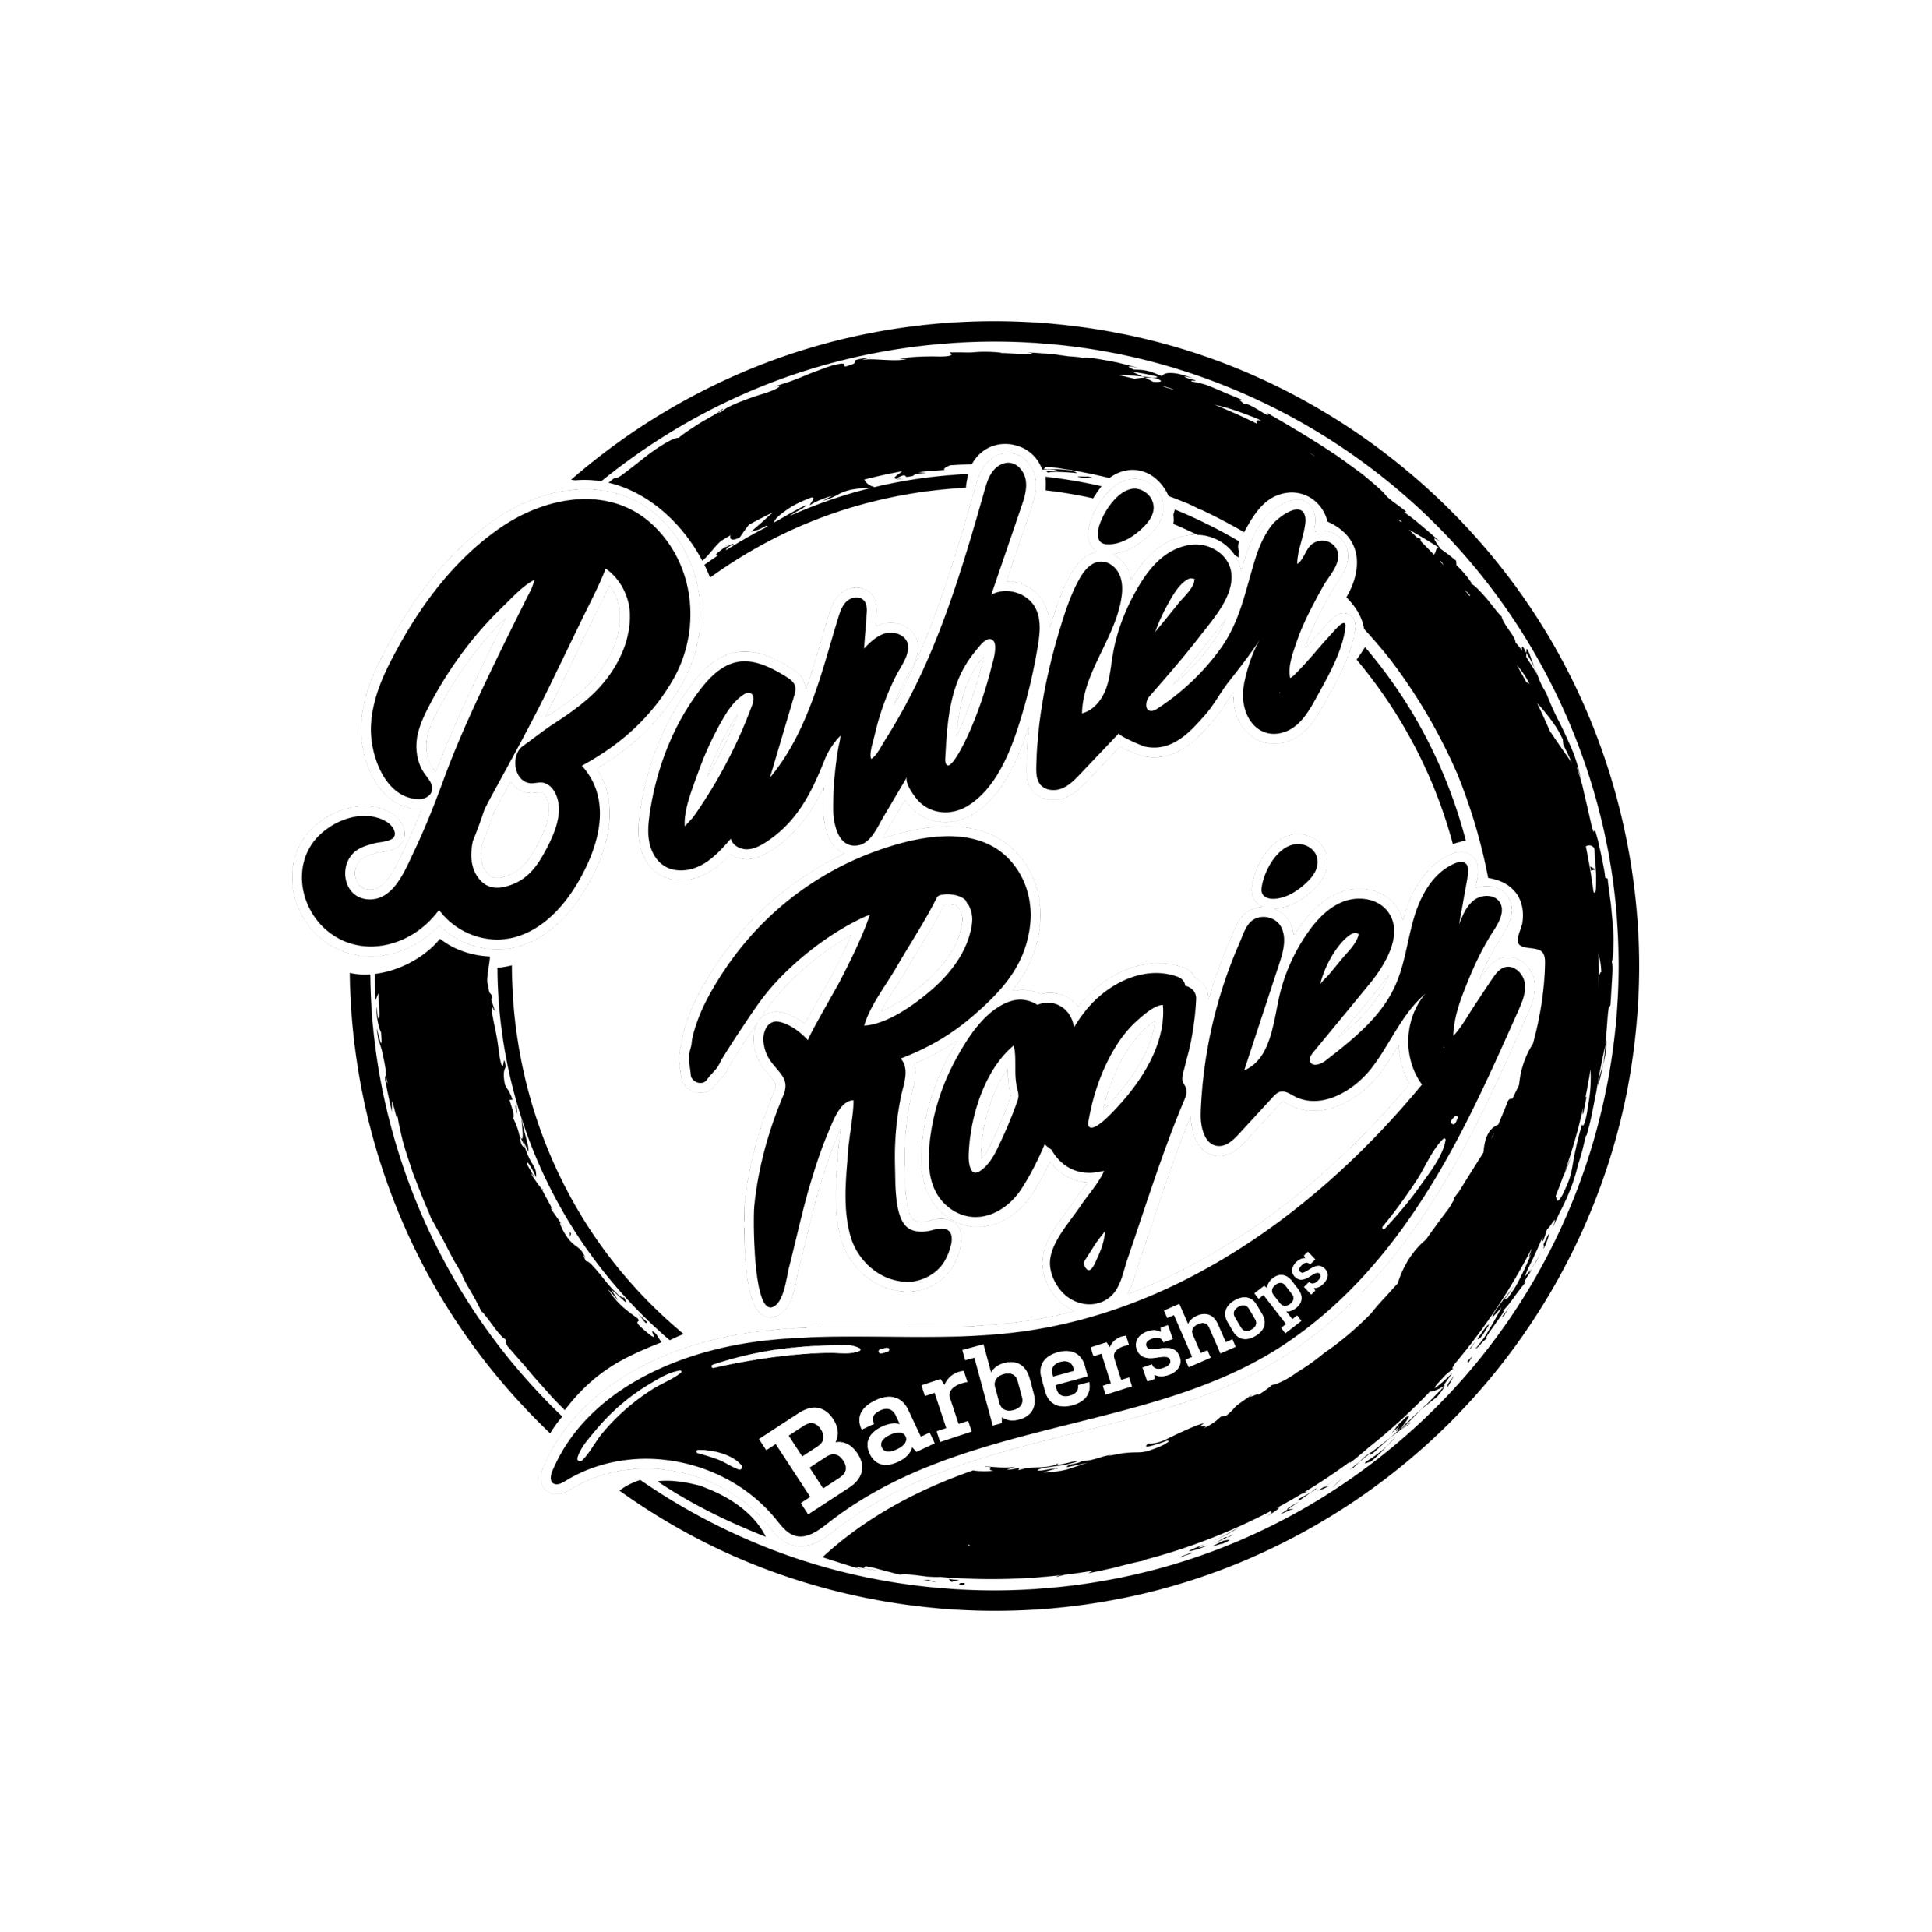 Barbier Rogier